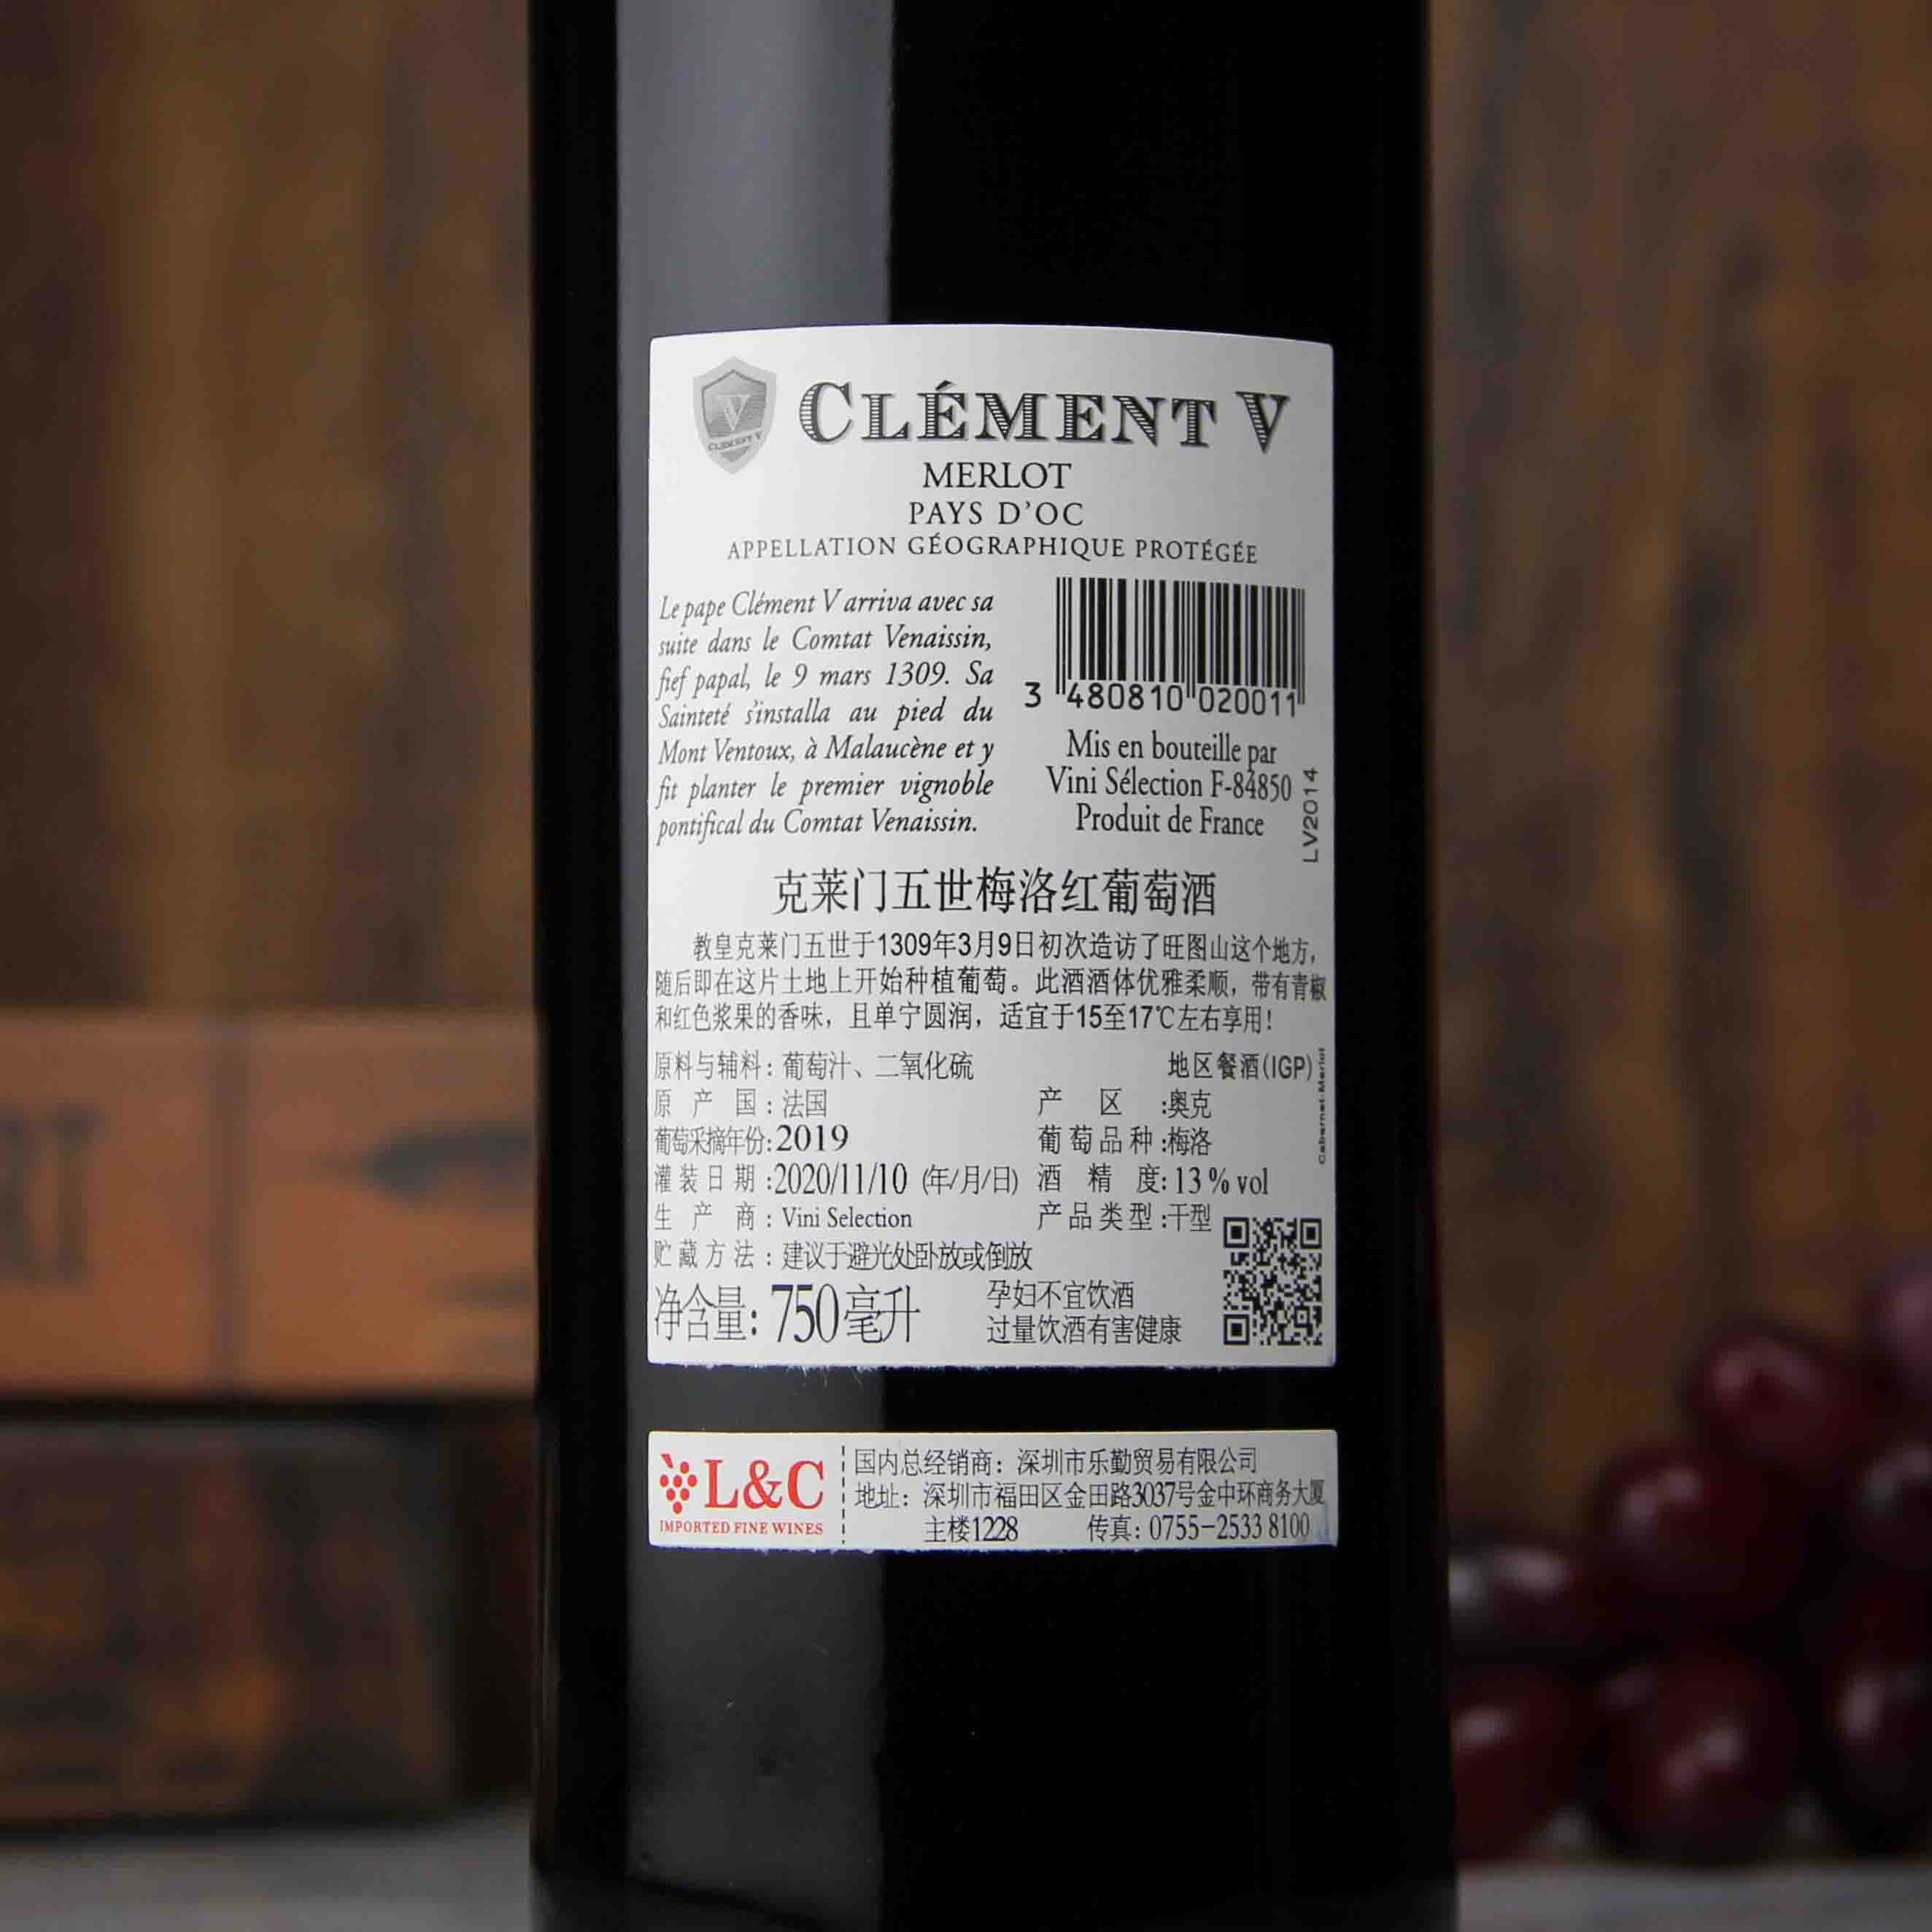 法国克莱门五世 梅洛红葡萄酒